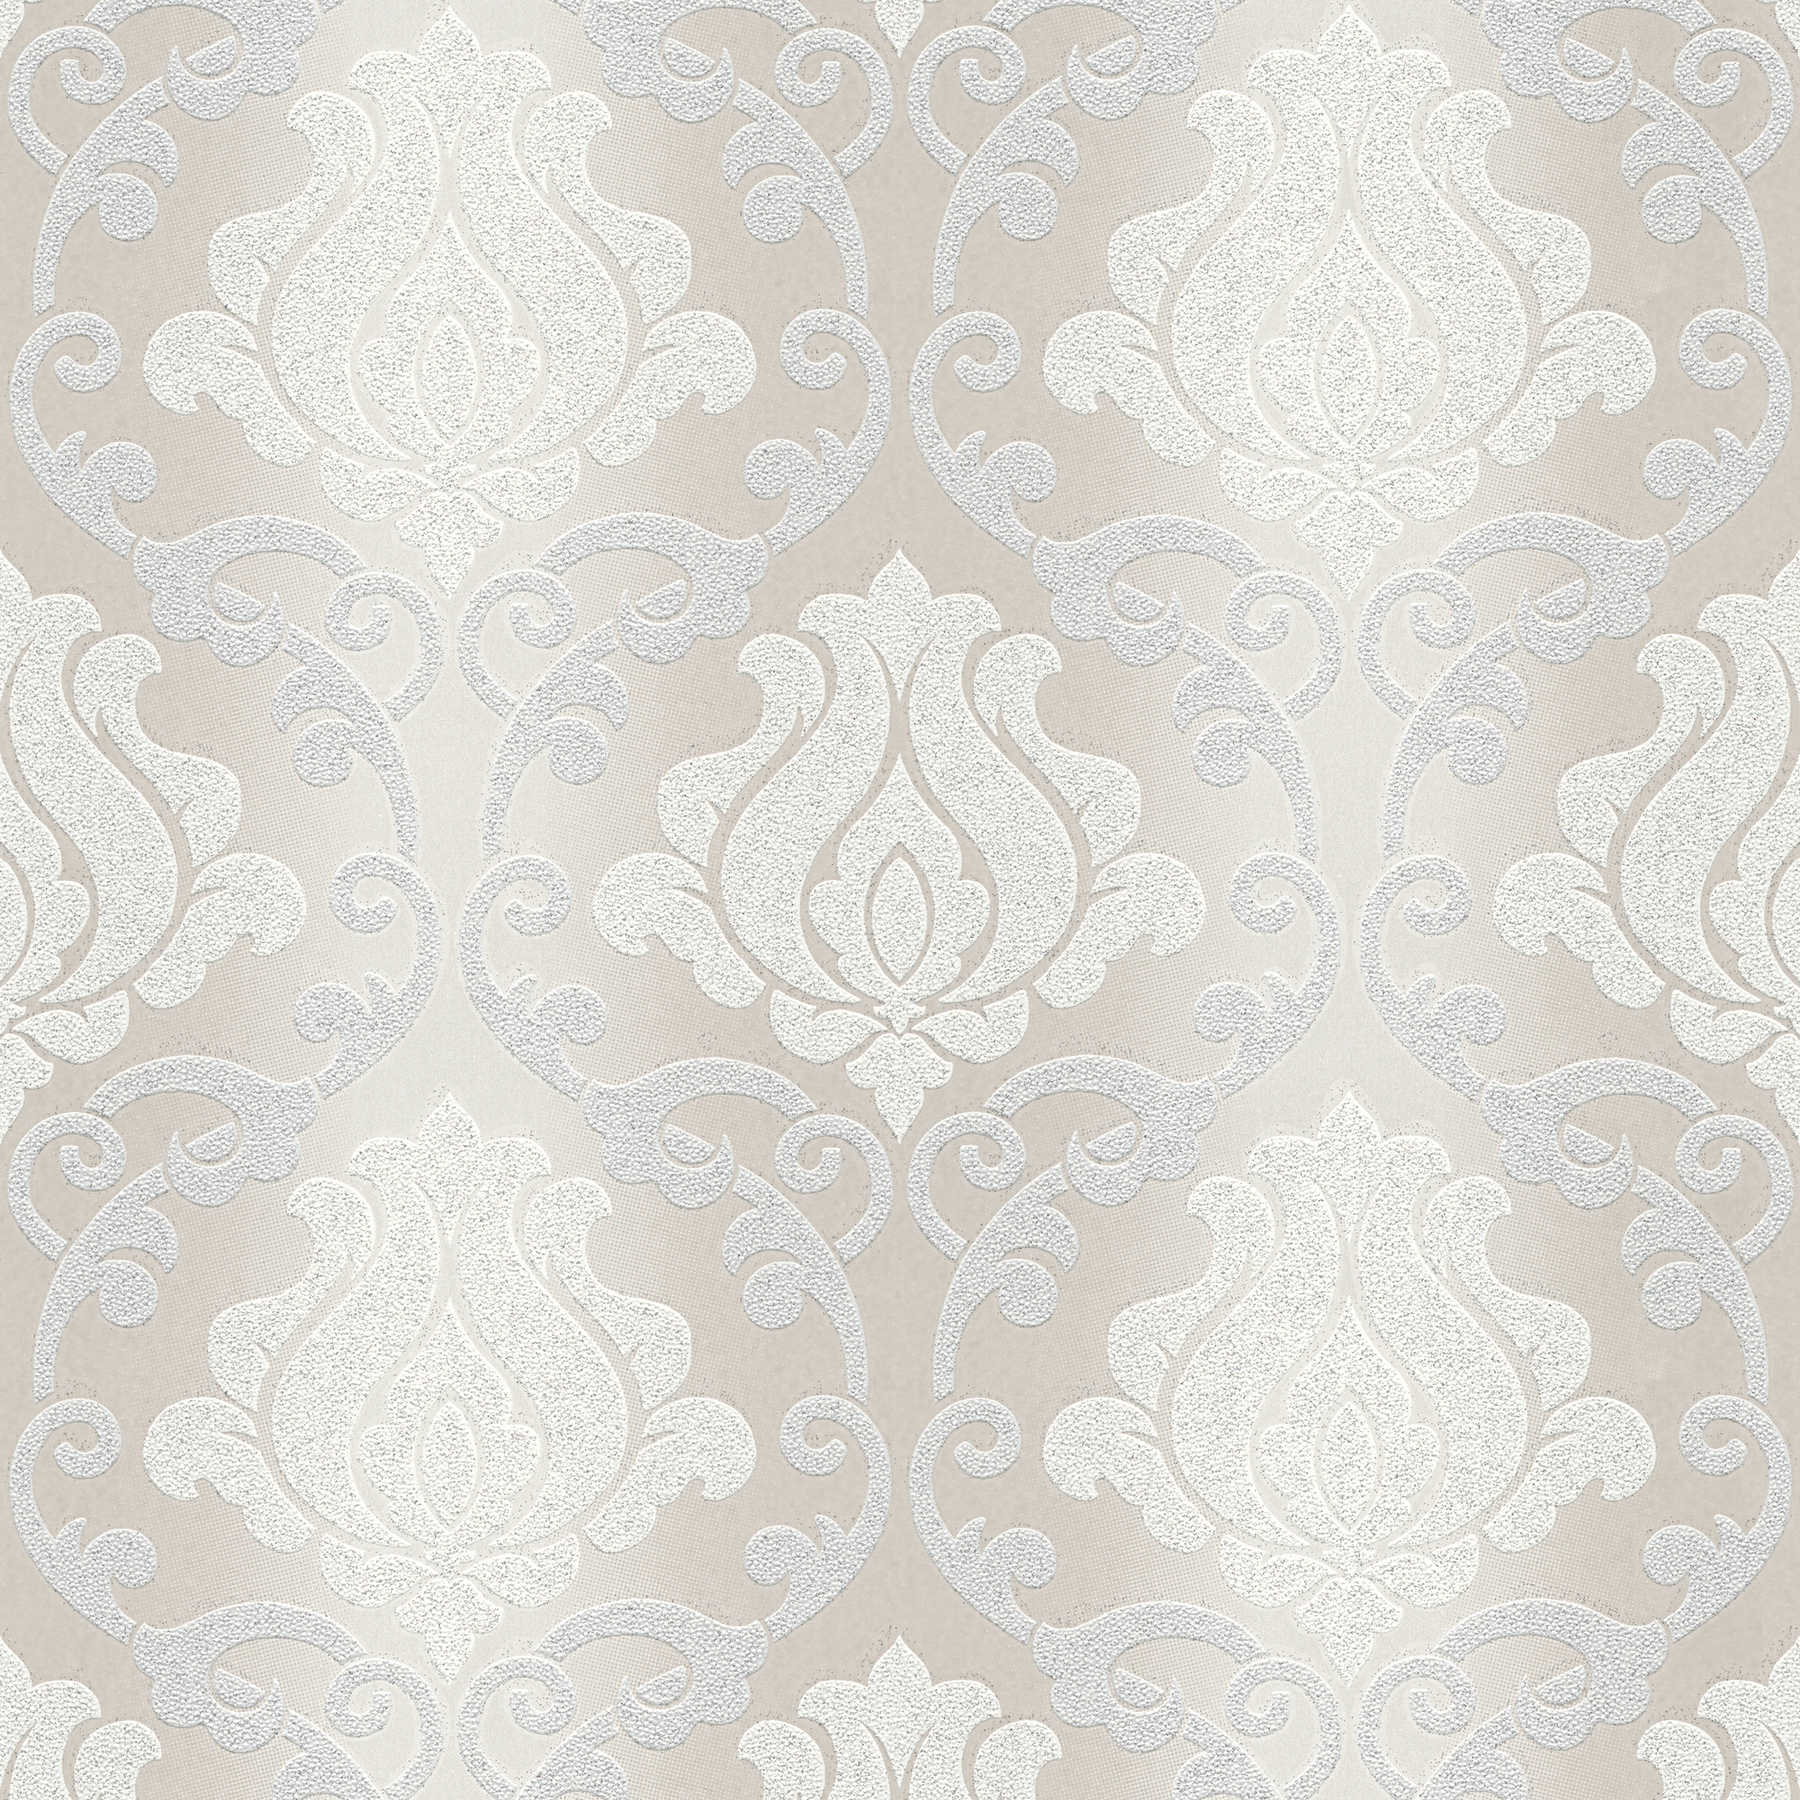 Glitter behang met barok patroon & metallic effect kleuren - crème, grijs
